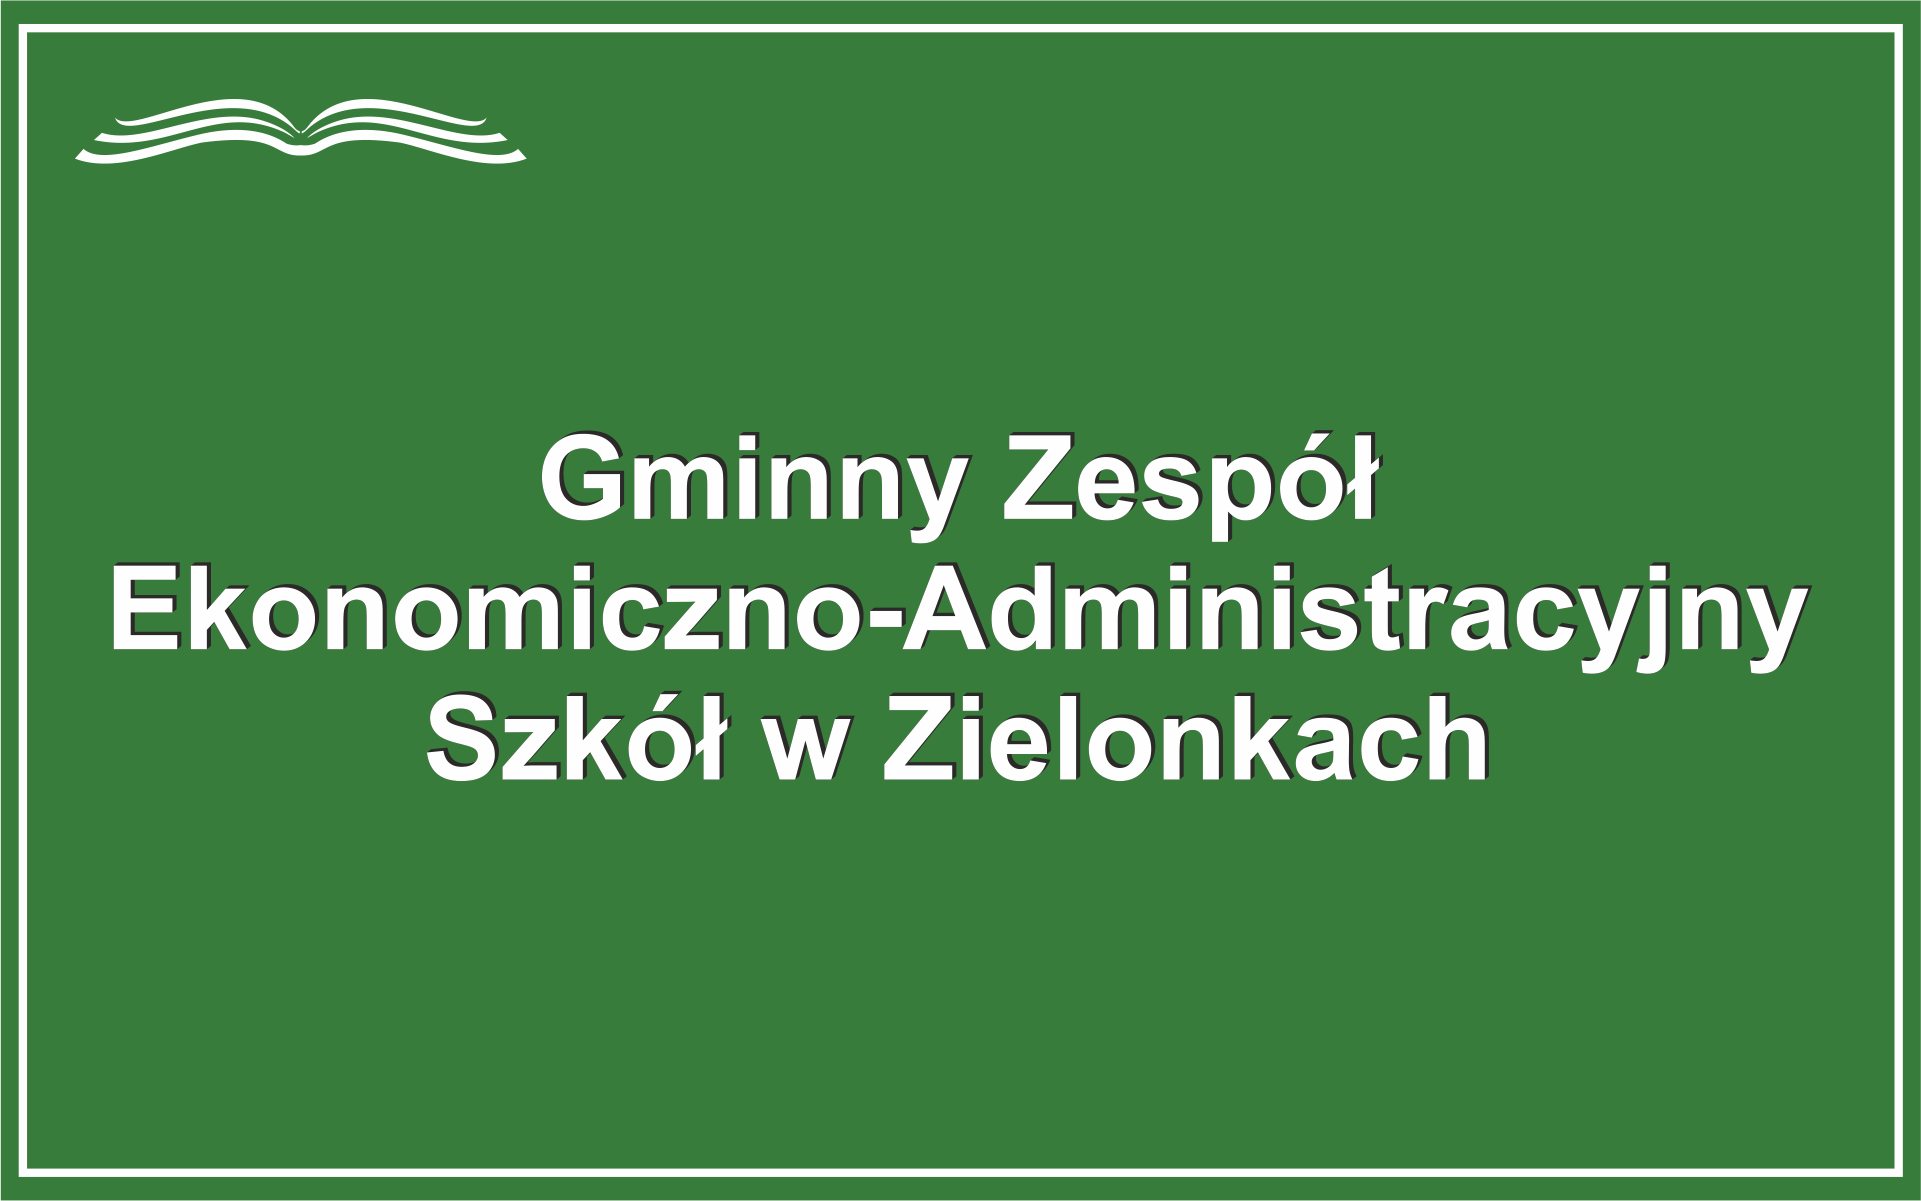 na zielonym tle napis Gminny Zespół Ekonomiczno-Administracyjny Szkół w Zielonkach